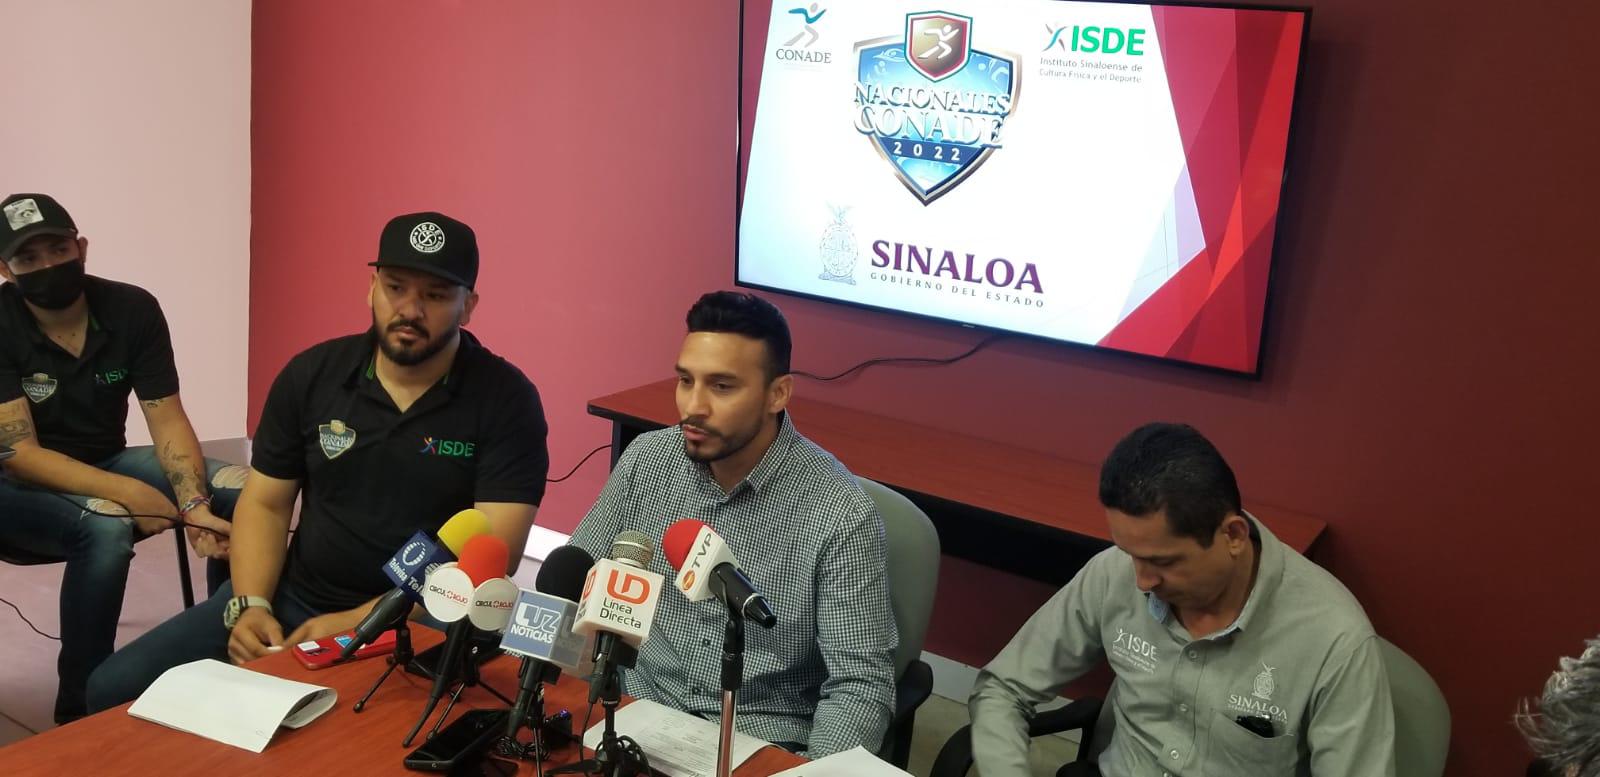 $!Listas las fechas y sedes en Sinaloa para los Juegos Nacionales Conade 2022